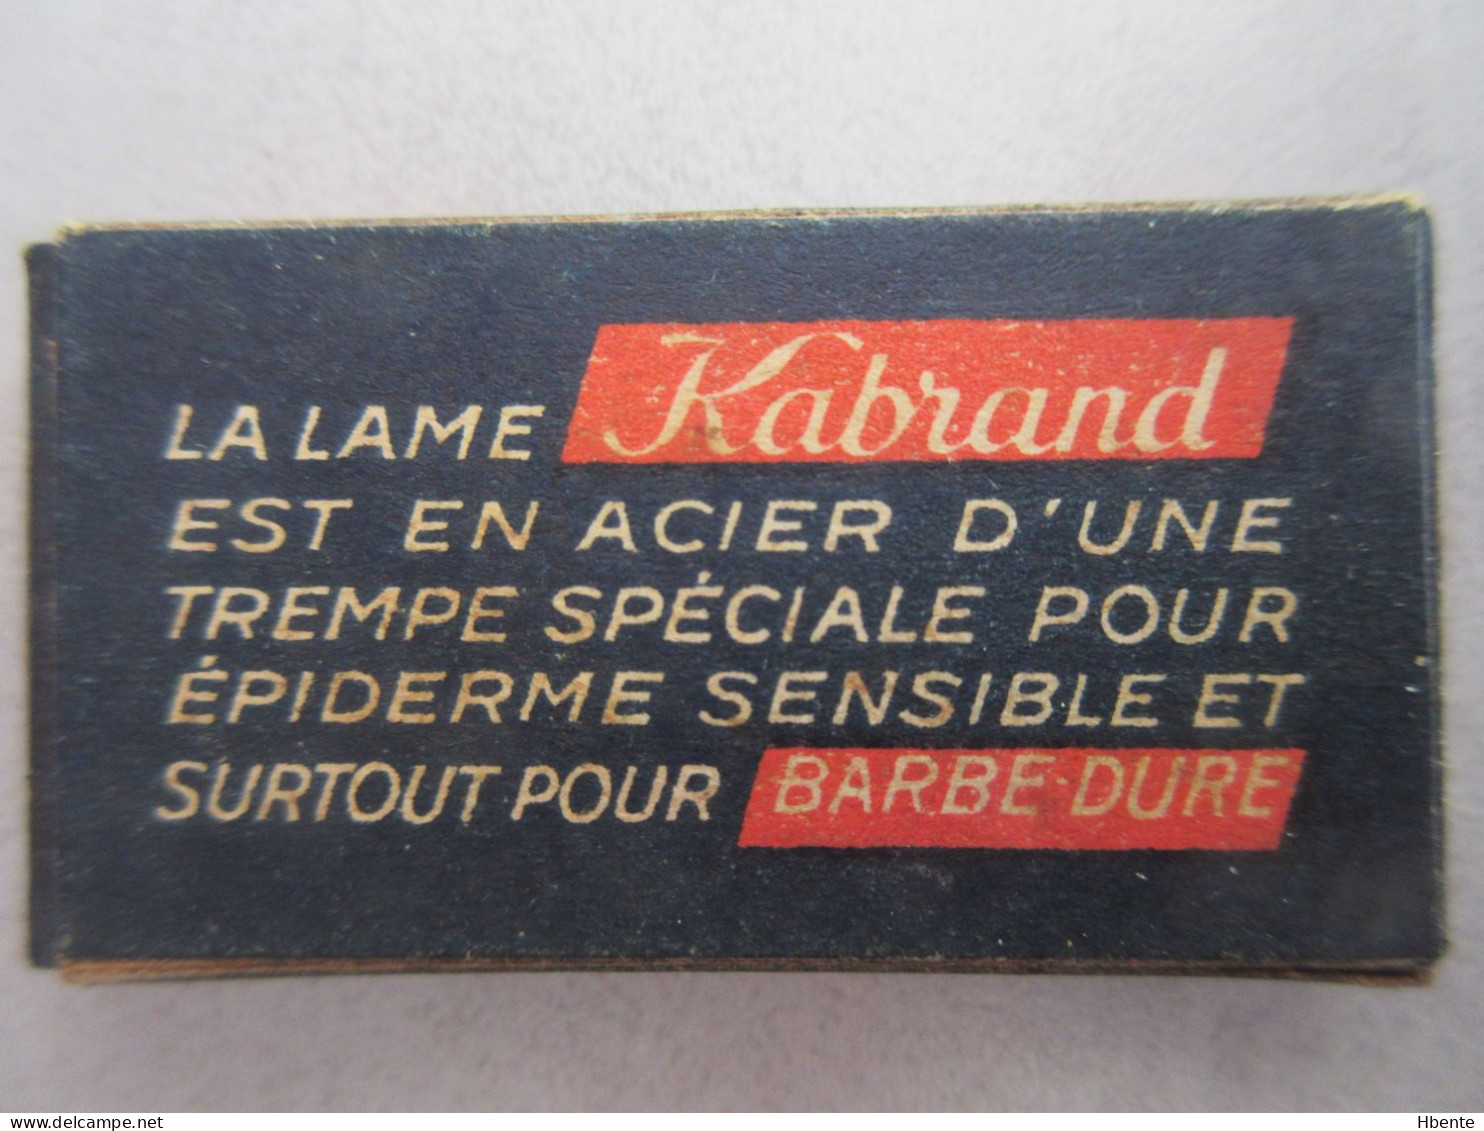 Boite Complète De 5 Lames De Rasoir KABRAND - Complet Box Of 5 Rasor Blades - Lames De Rasoir